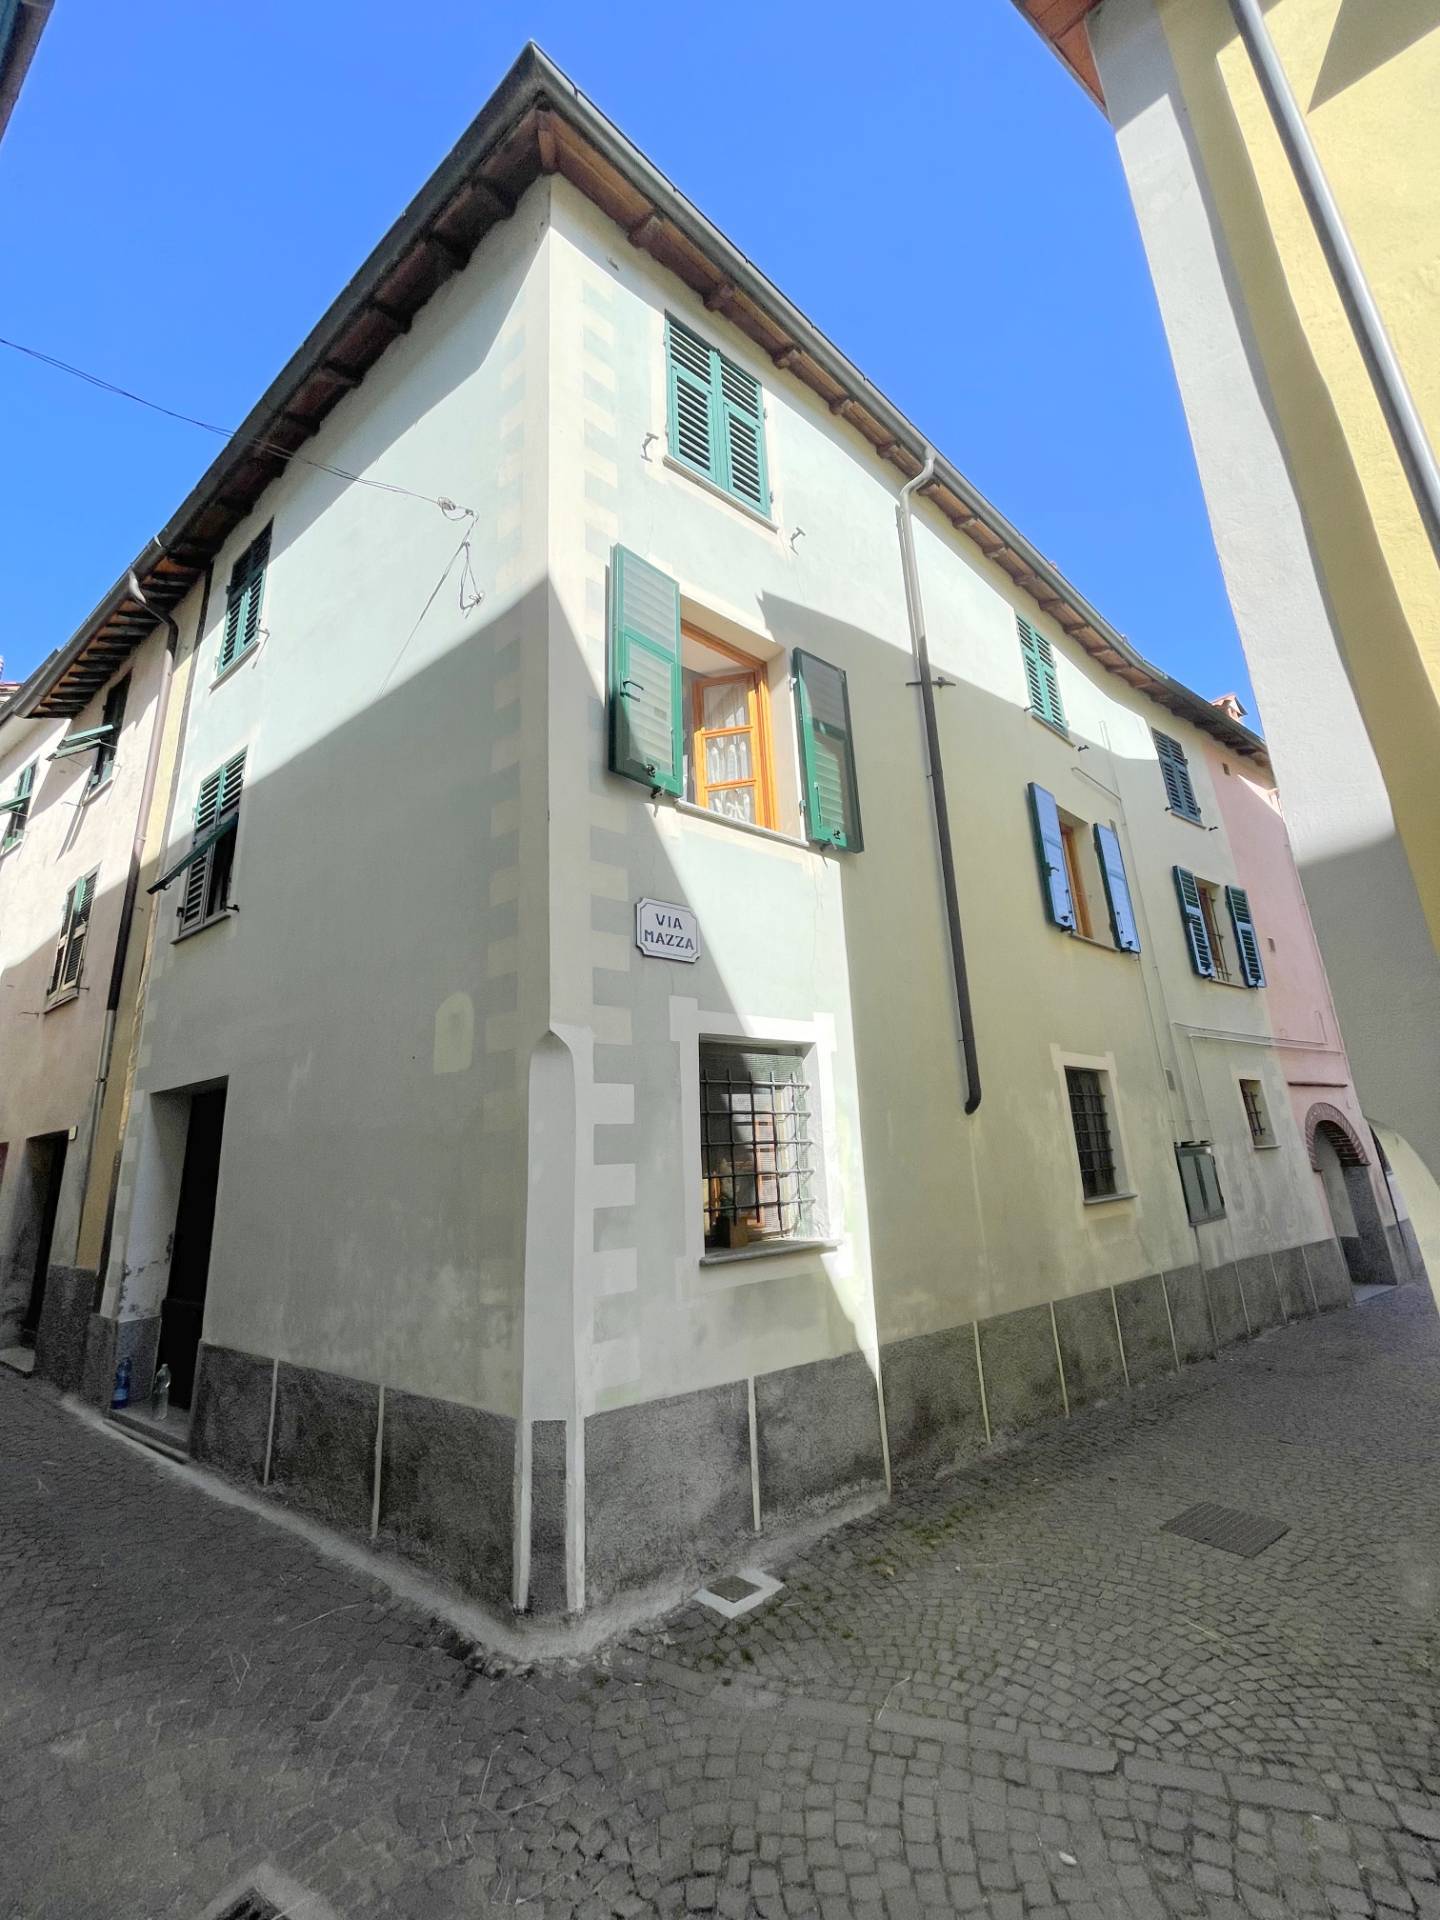 Appartamento in vendita a Mallare, 4 locali, prezzo € 58.000 | PortaleAgenzieImmobiliari.it